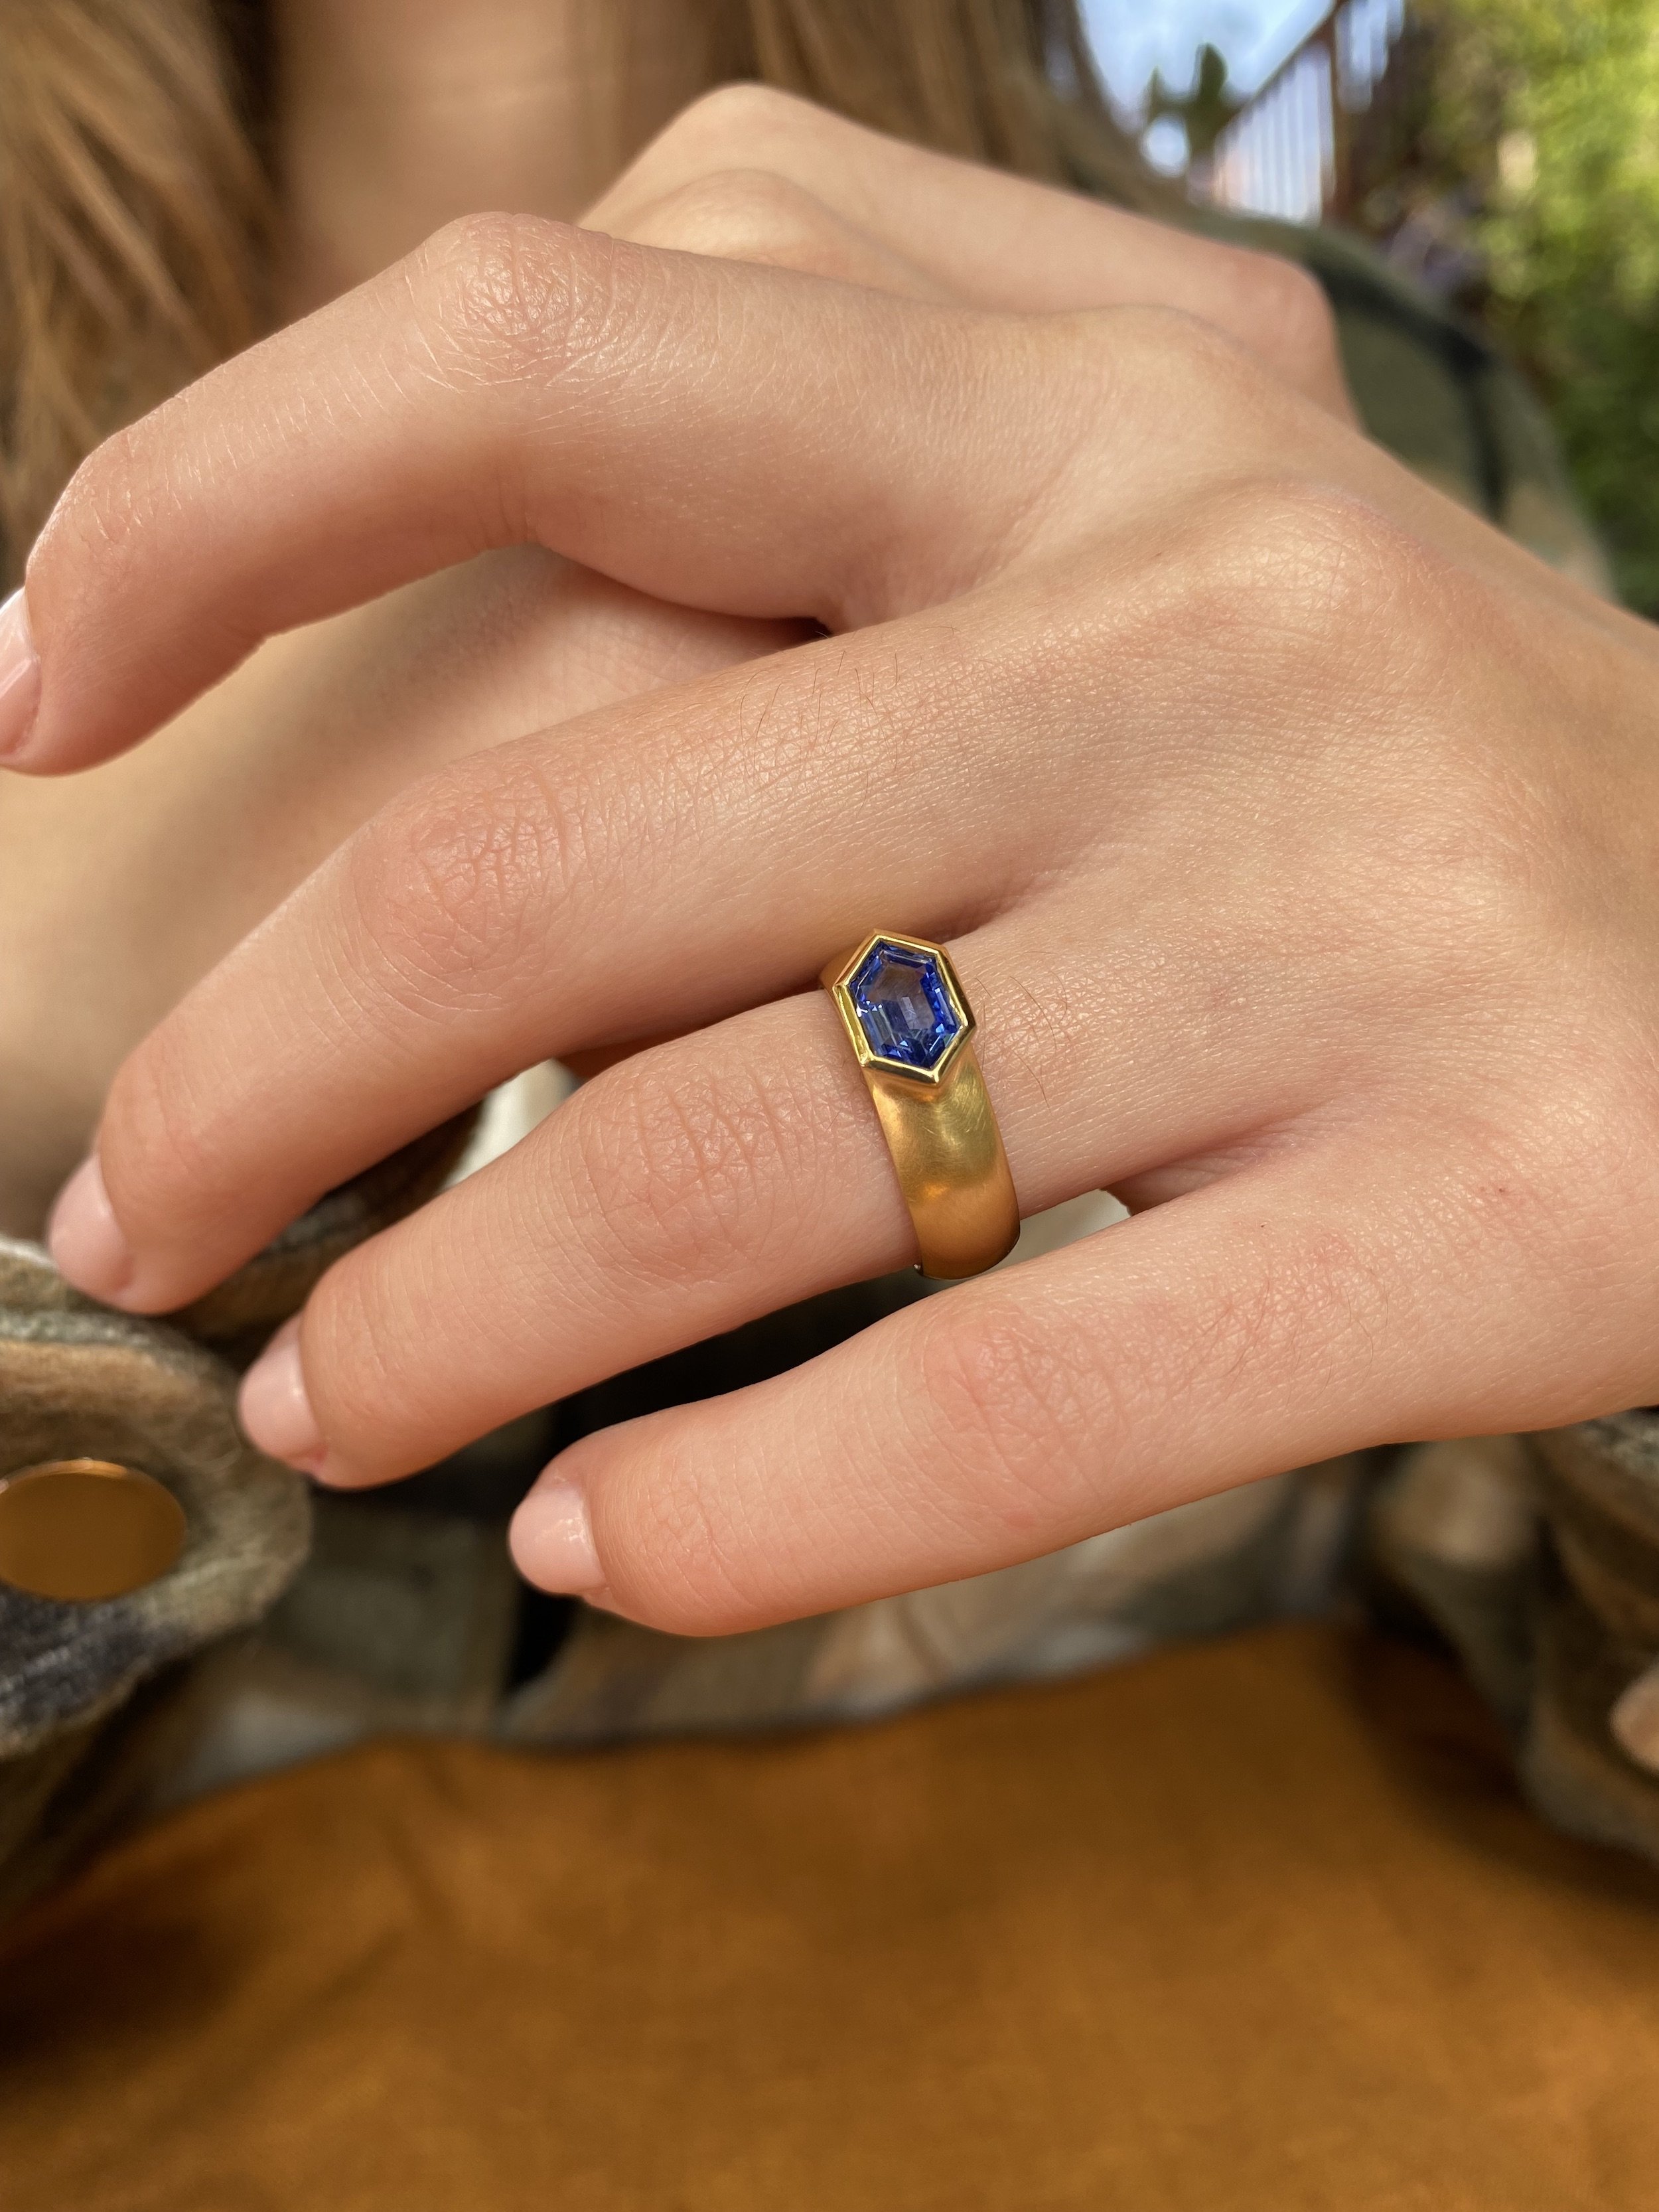 Shop Blue Sapphire Engagement Rings